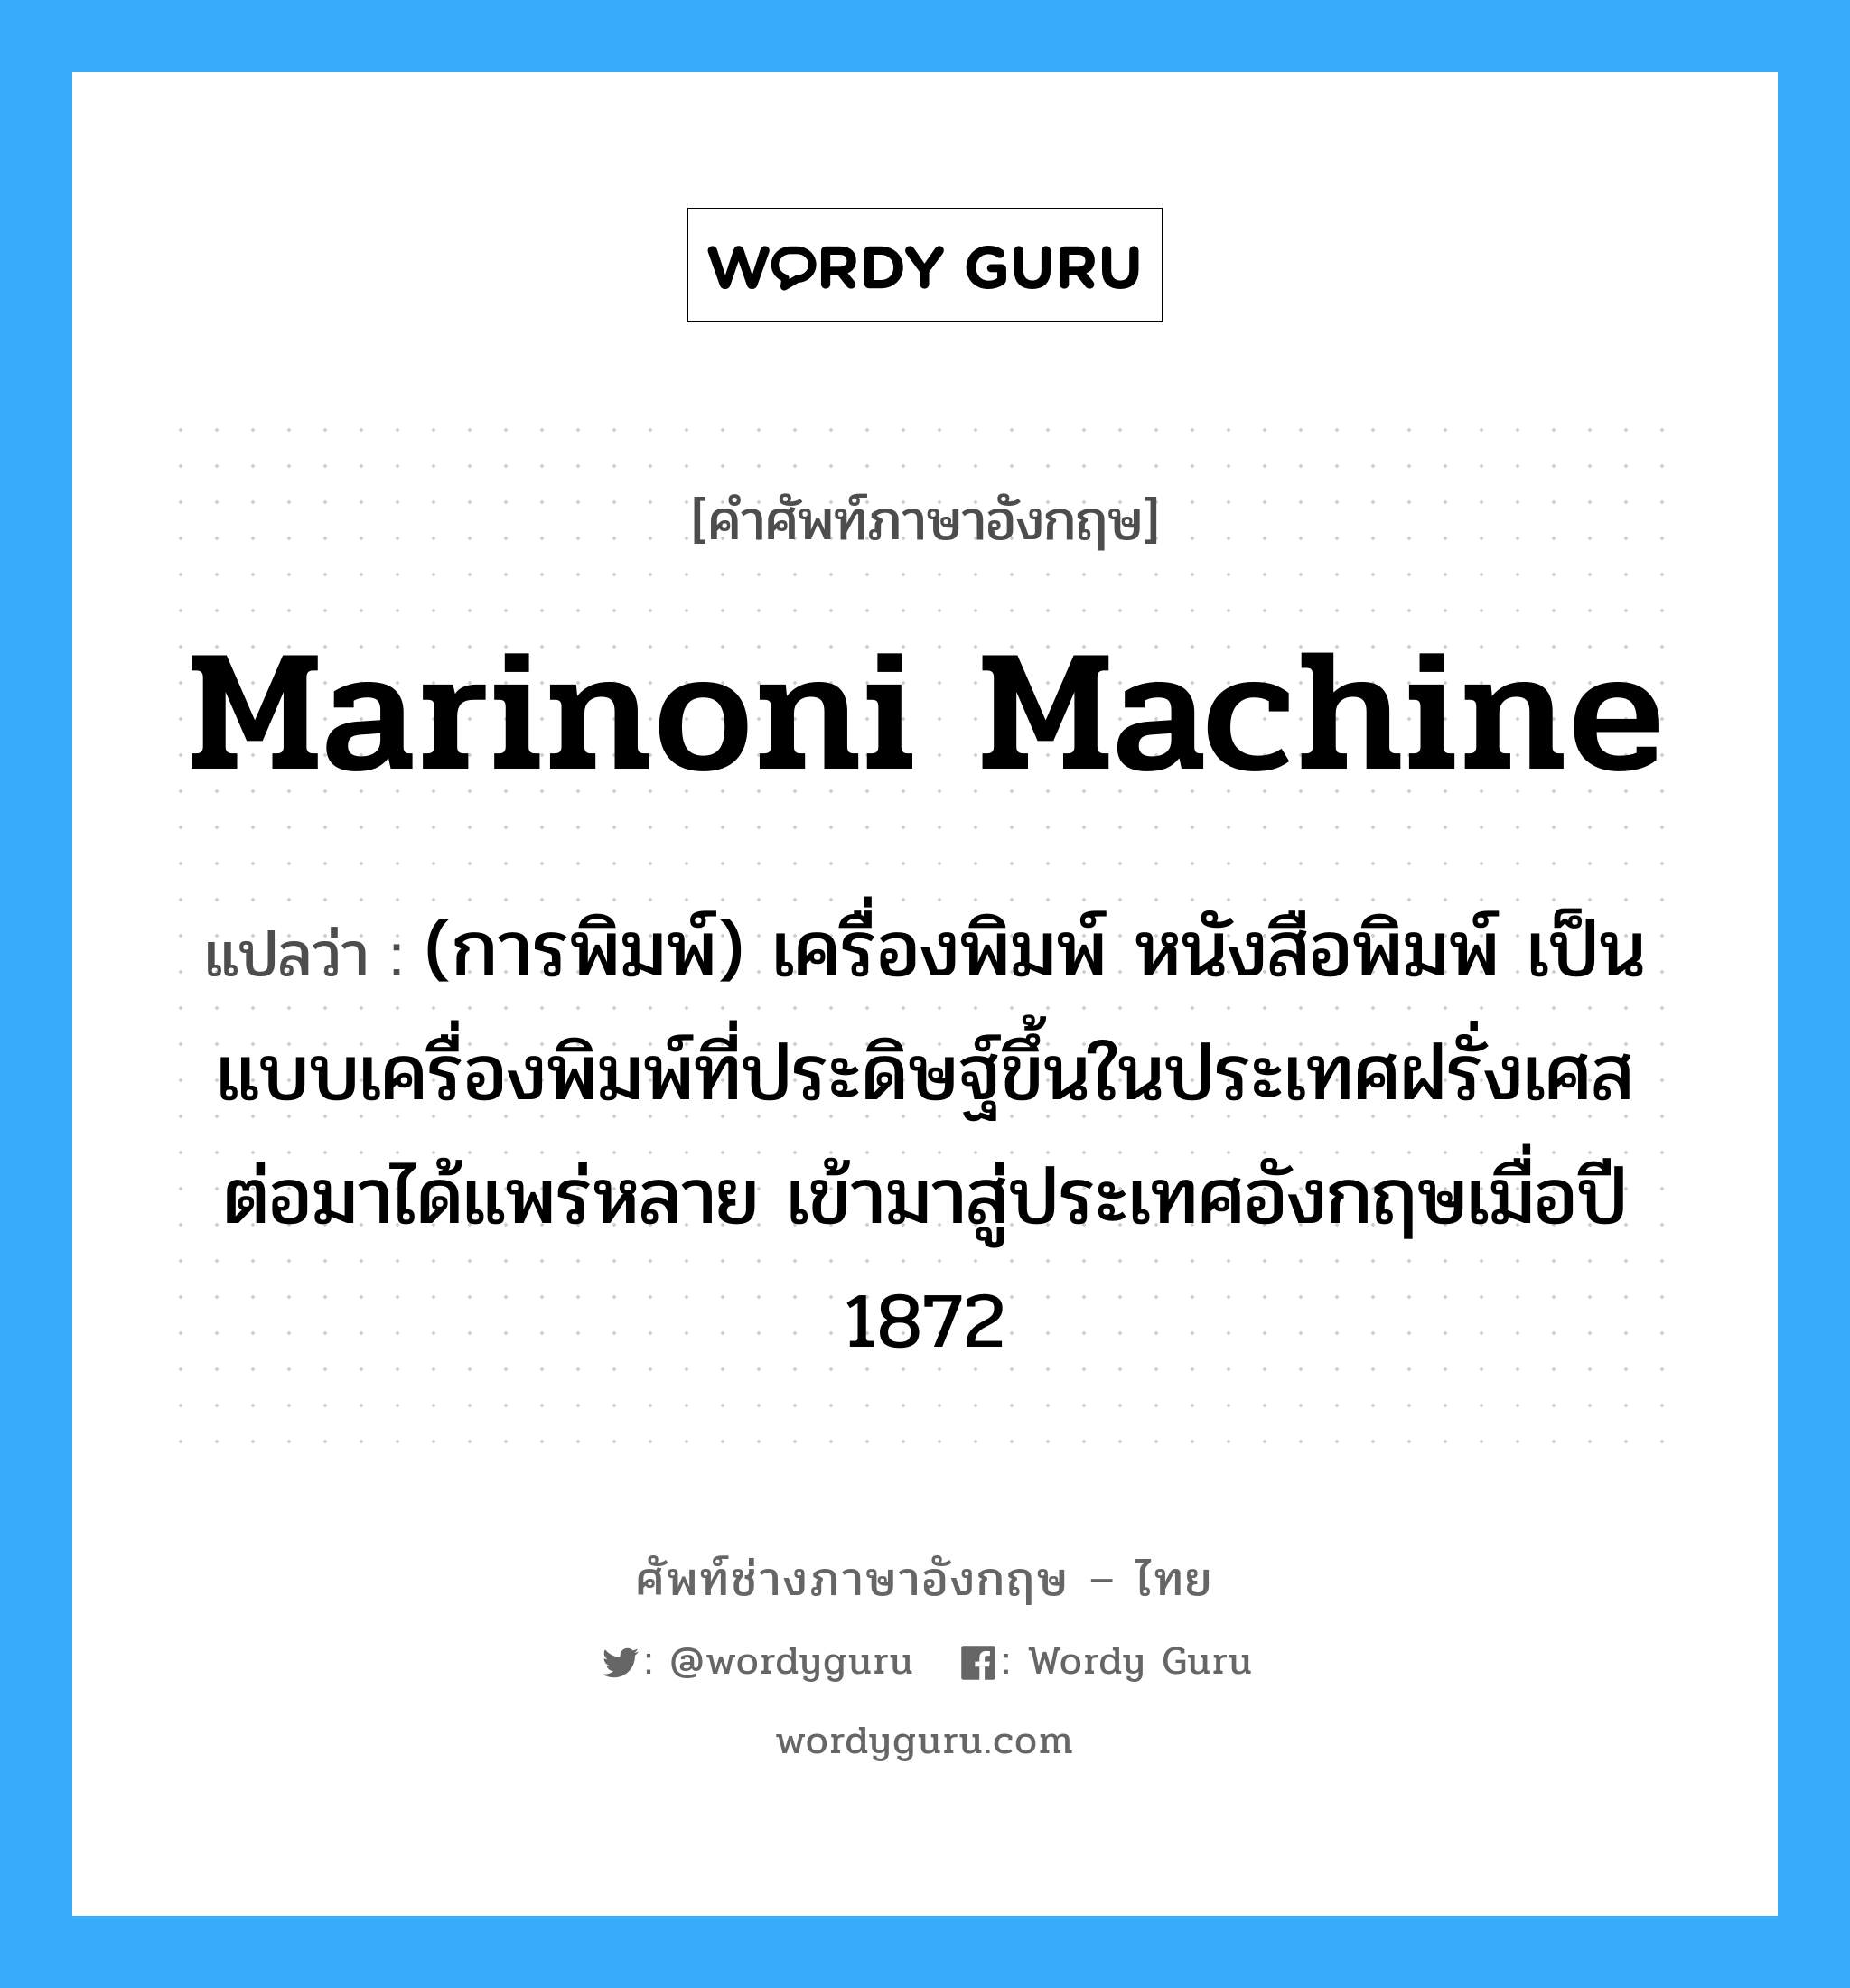 Marinoni machine แปลว่า?, คำศัพท์ช่างภาษาอังกฤษ - ไทย Marinoni machine คำศัพท์ภาษาอังกฤษ Marinoni machine แปลว่า (การพิมพ์) เครื่องพิมพ์ หนังสือพิมพ์ เป็นแบบเครื่องพิมพ์ที่ประดิษฐ์ขึ้นในประเทศฝรั่งเศส ต่อมาได้แพร่หลาย เข้ามาสู่ประเทศอังกฤษเมื่อปี 1872